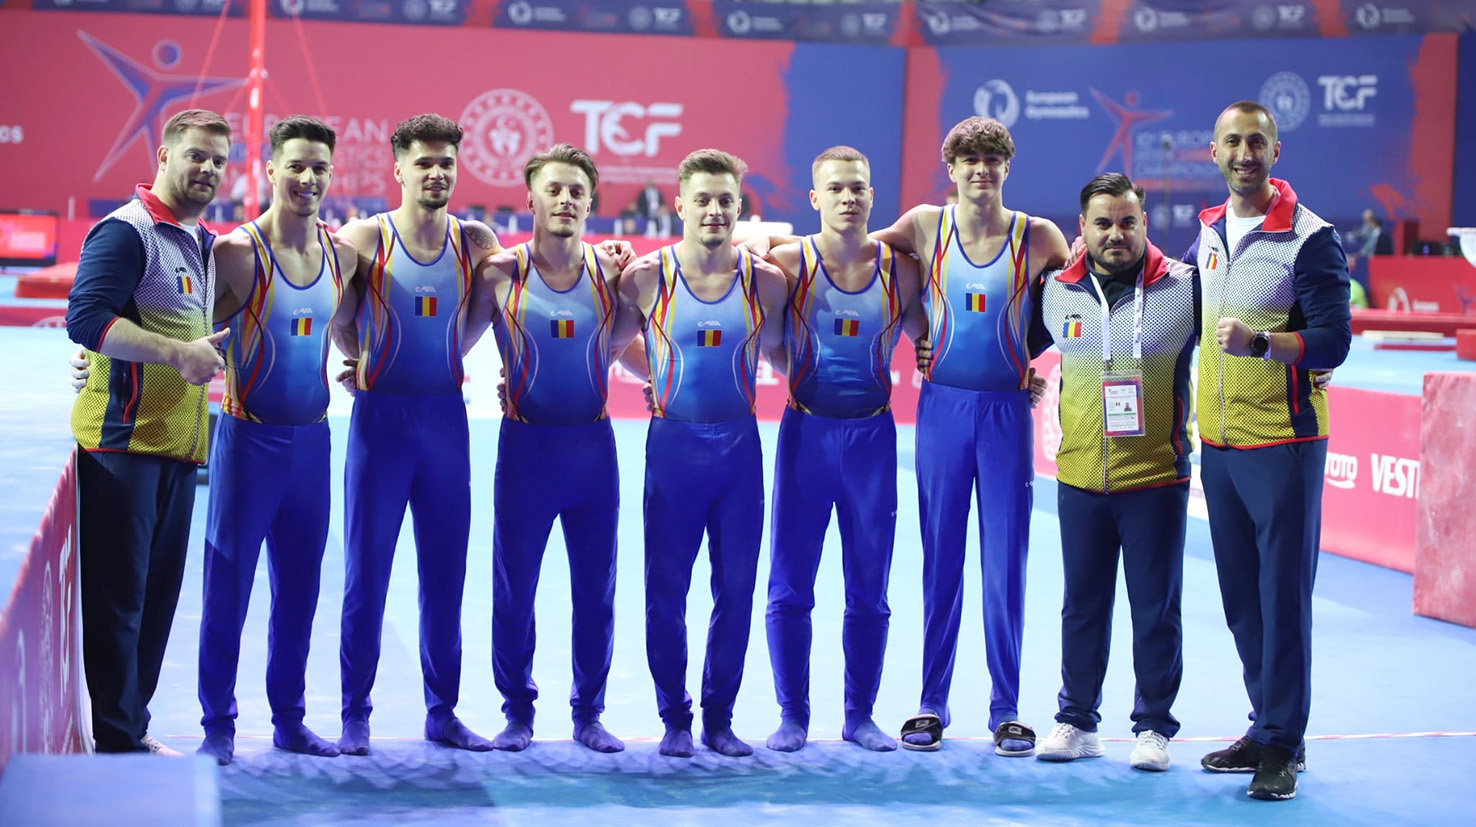 Gimnaștii români sau calificat la Campionatul Mondial! Tricolorii pot